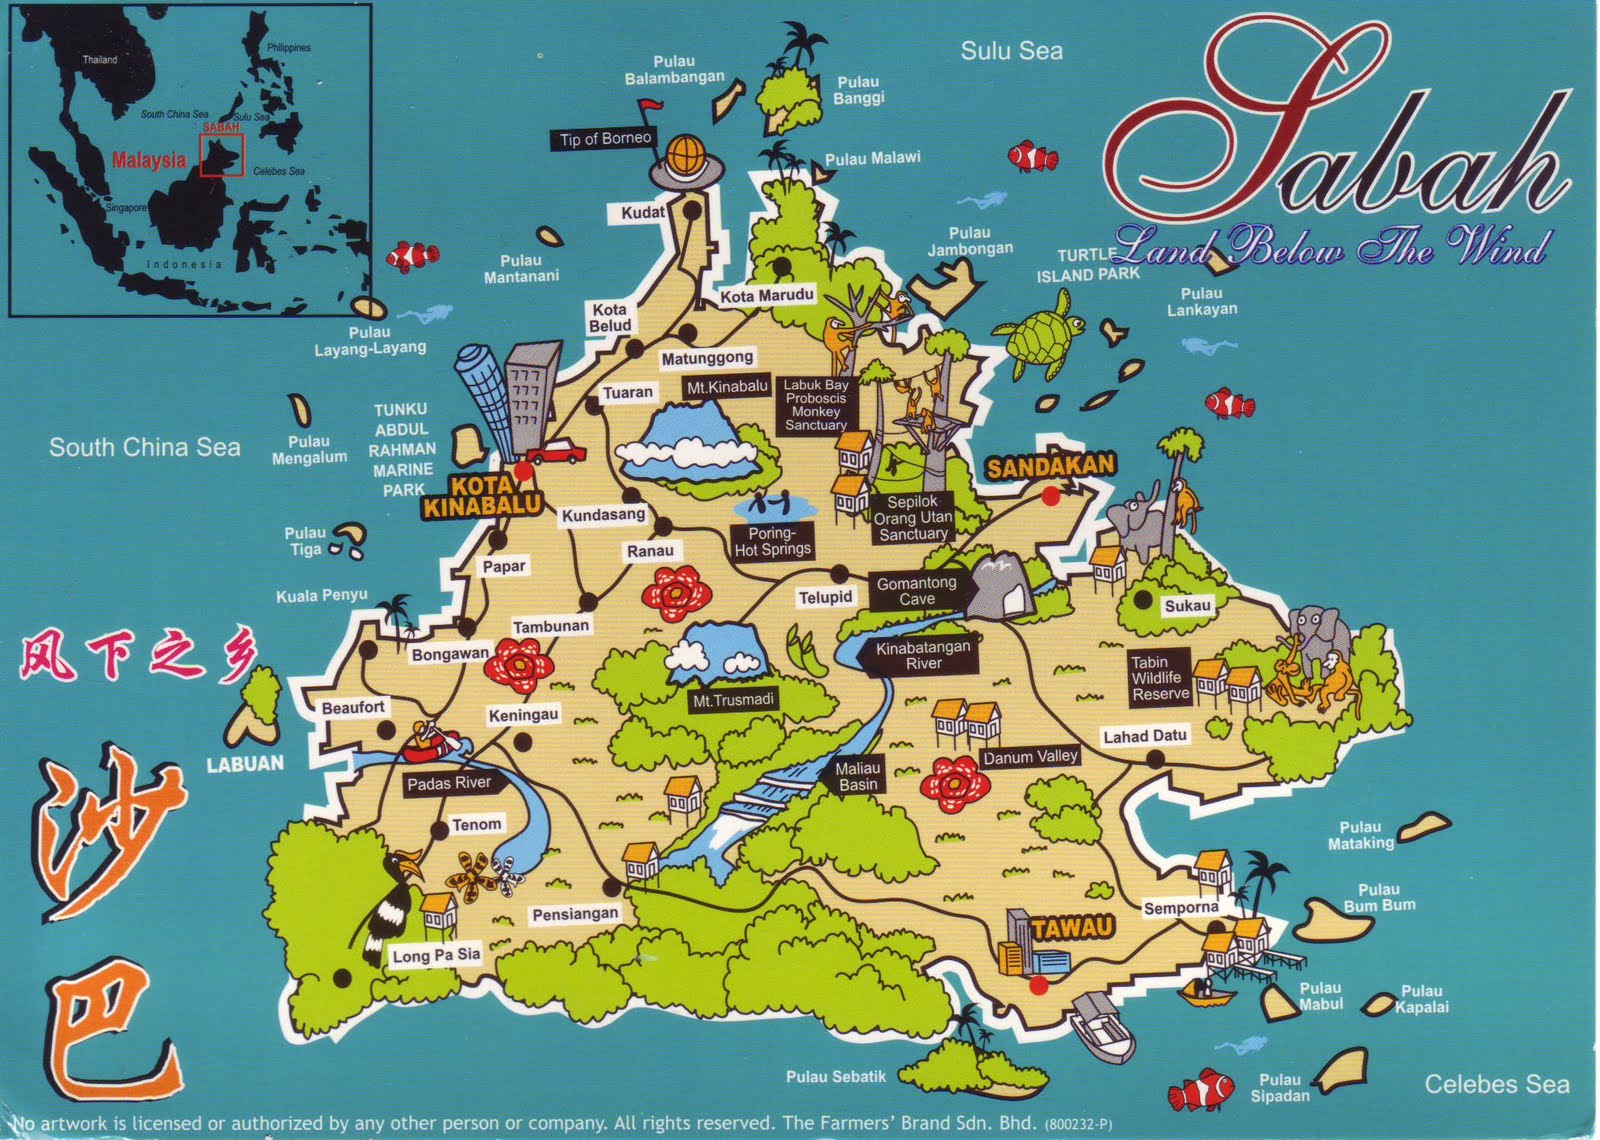 The World in Postcards - Sabine's Blog: Sabah Map